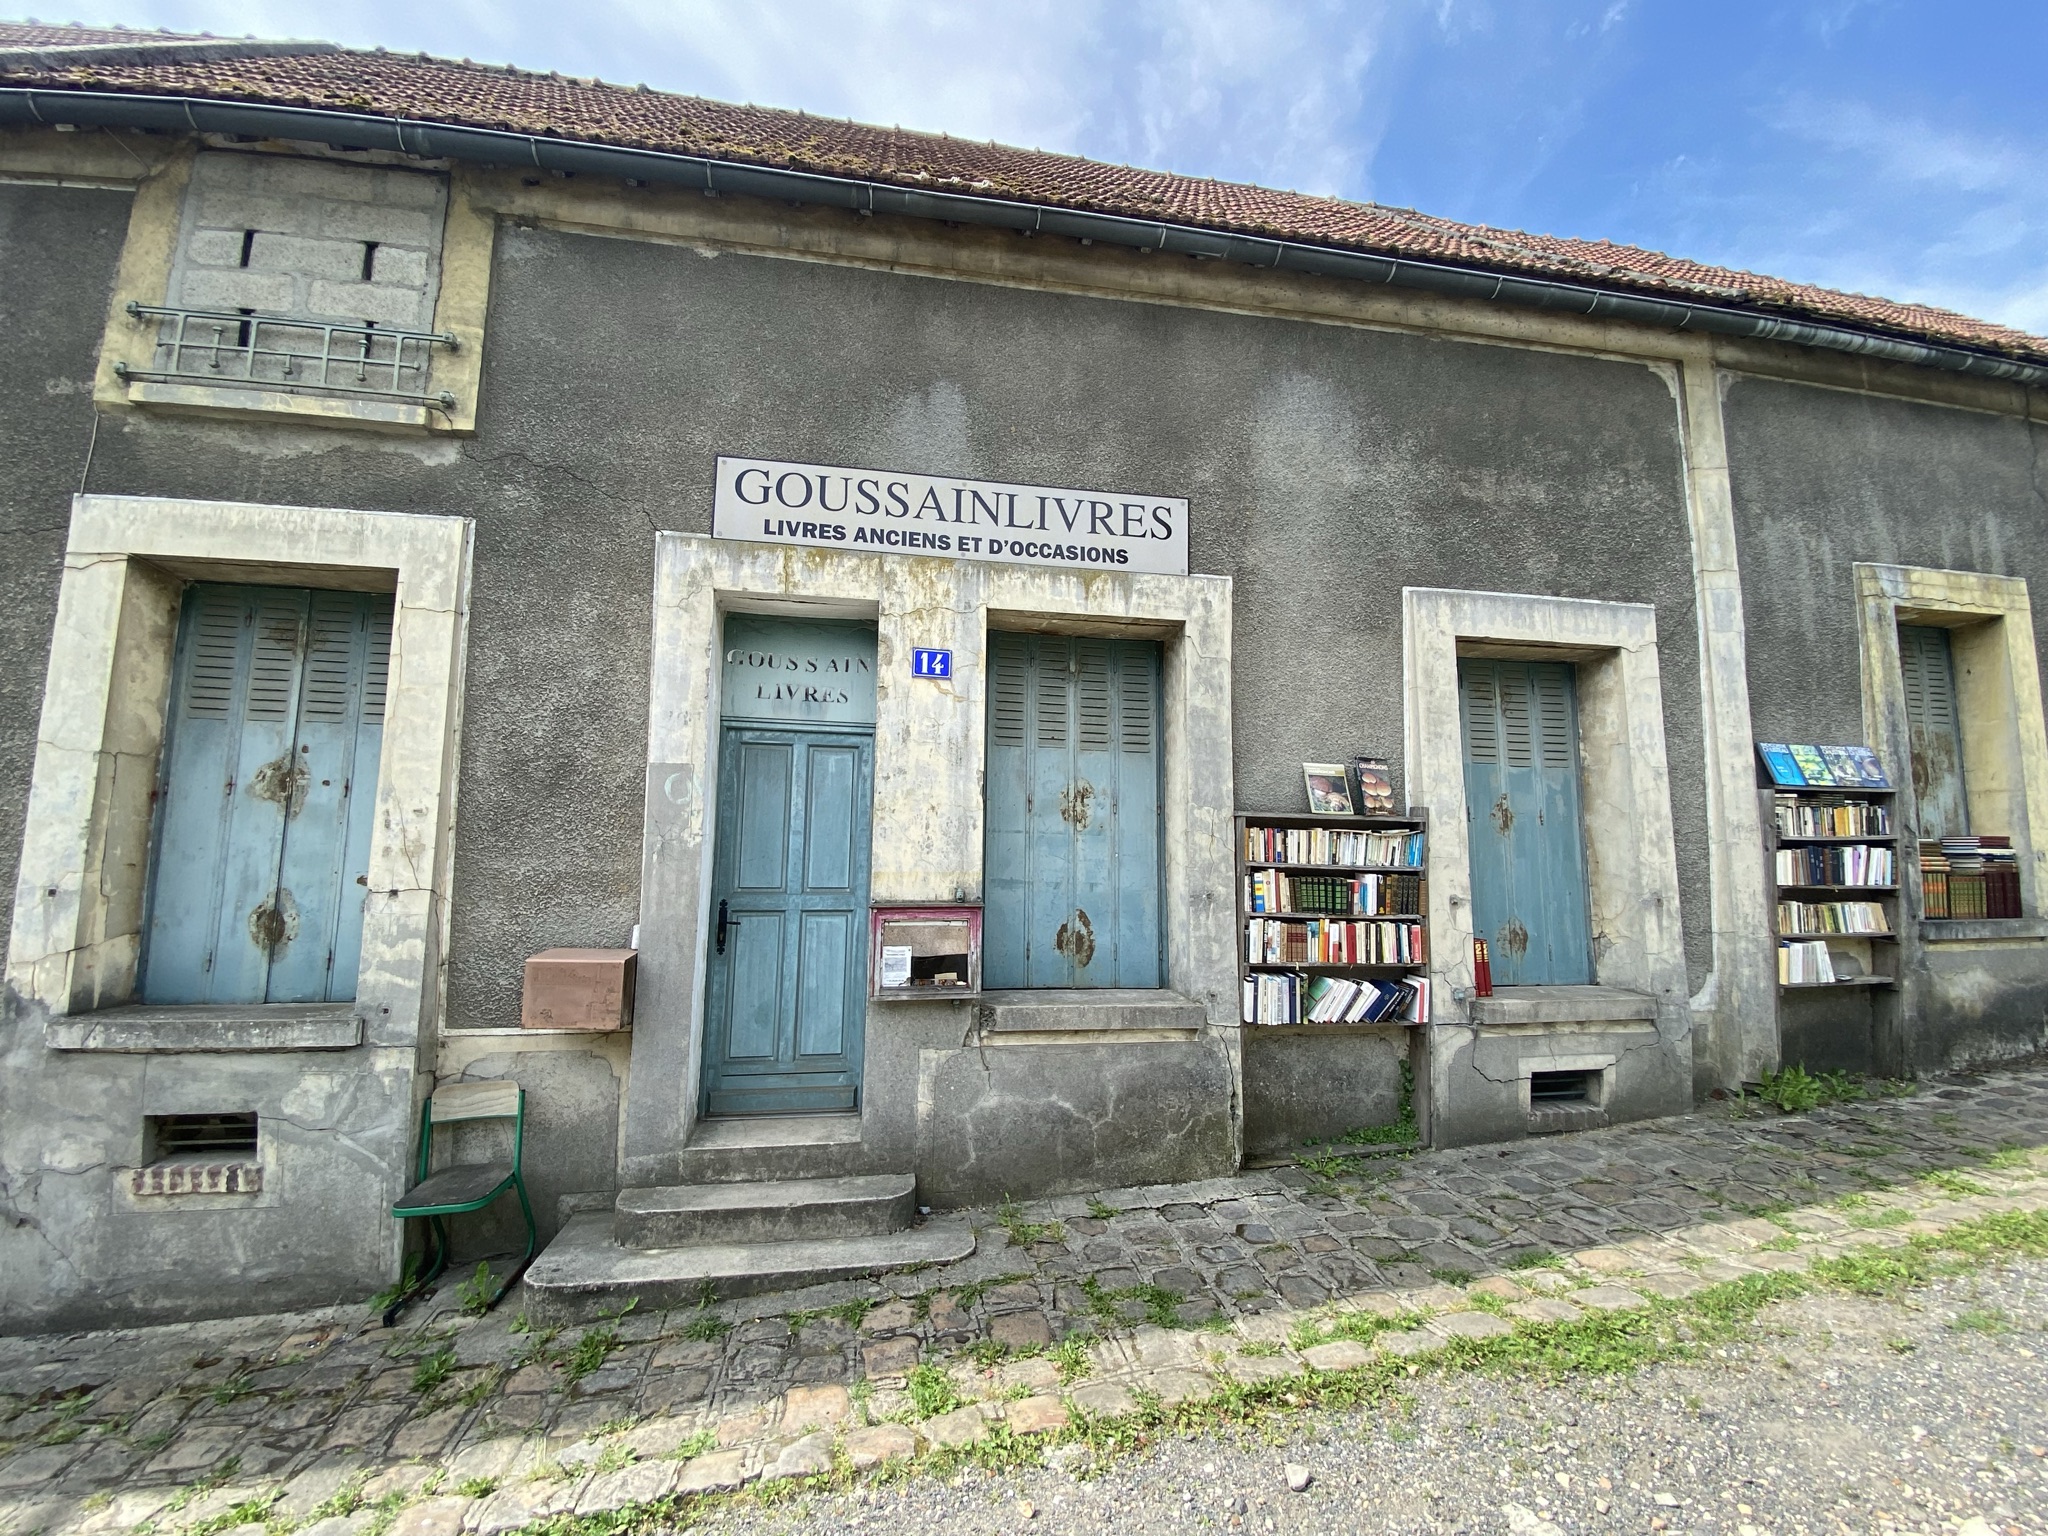 Un'esperienza di visita unica: il vecchio paese di Goussainville